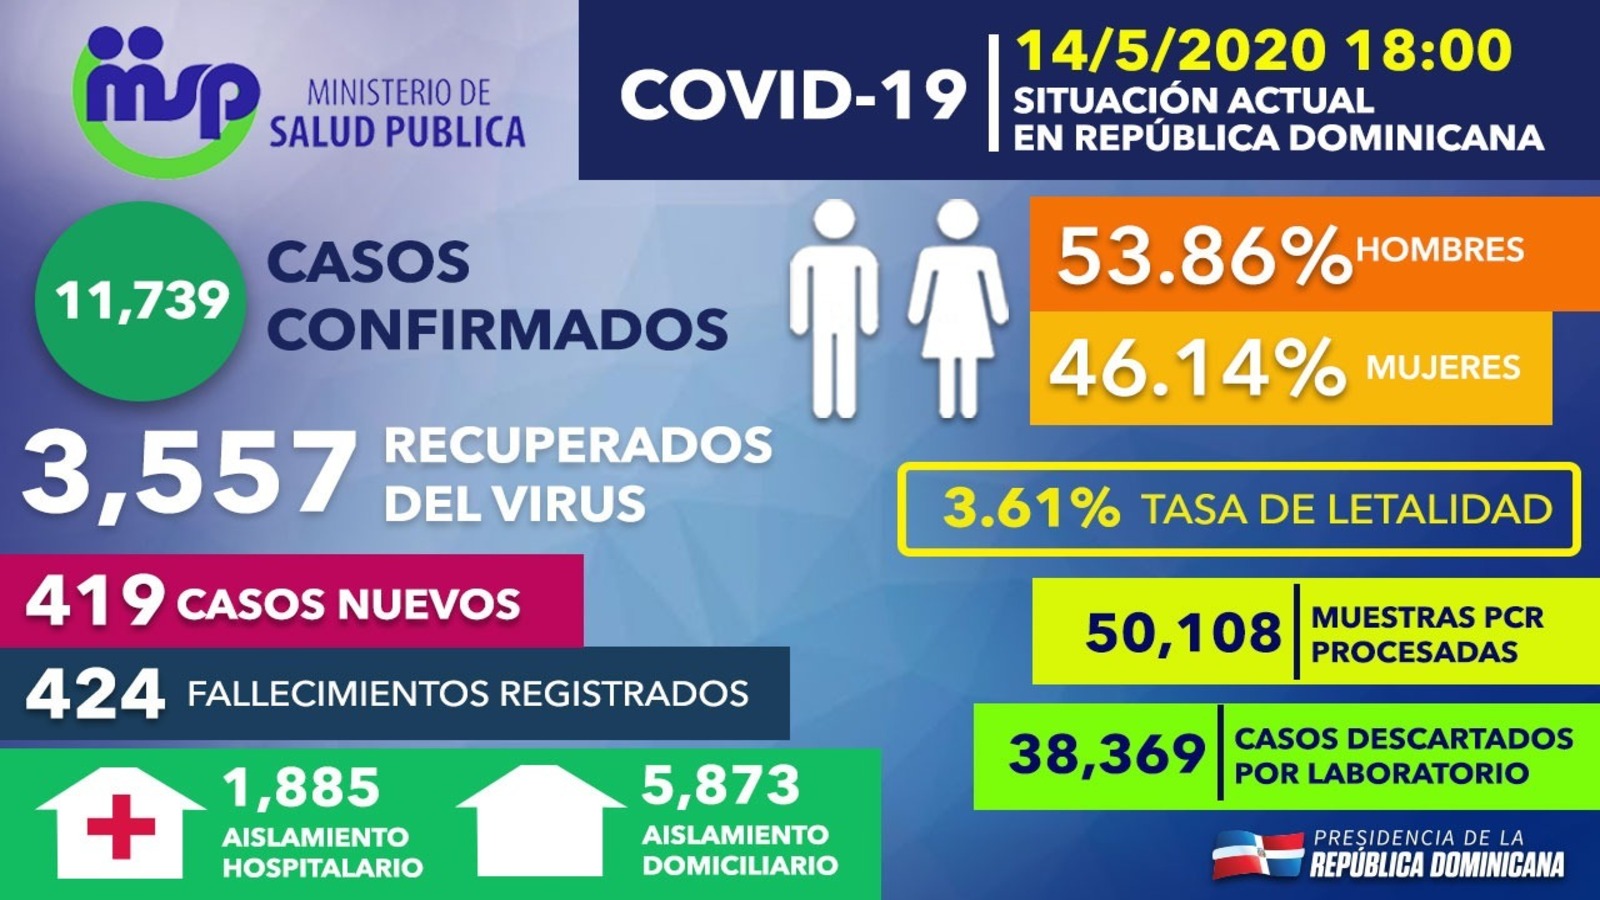 REPÚBLICA DOMINICANA: Personas recuperadas de COVID-19 en República Dominicana ascienden a 3,557; tasa letalidad se reduce a 3.61 %